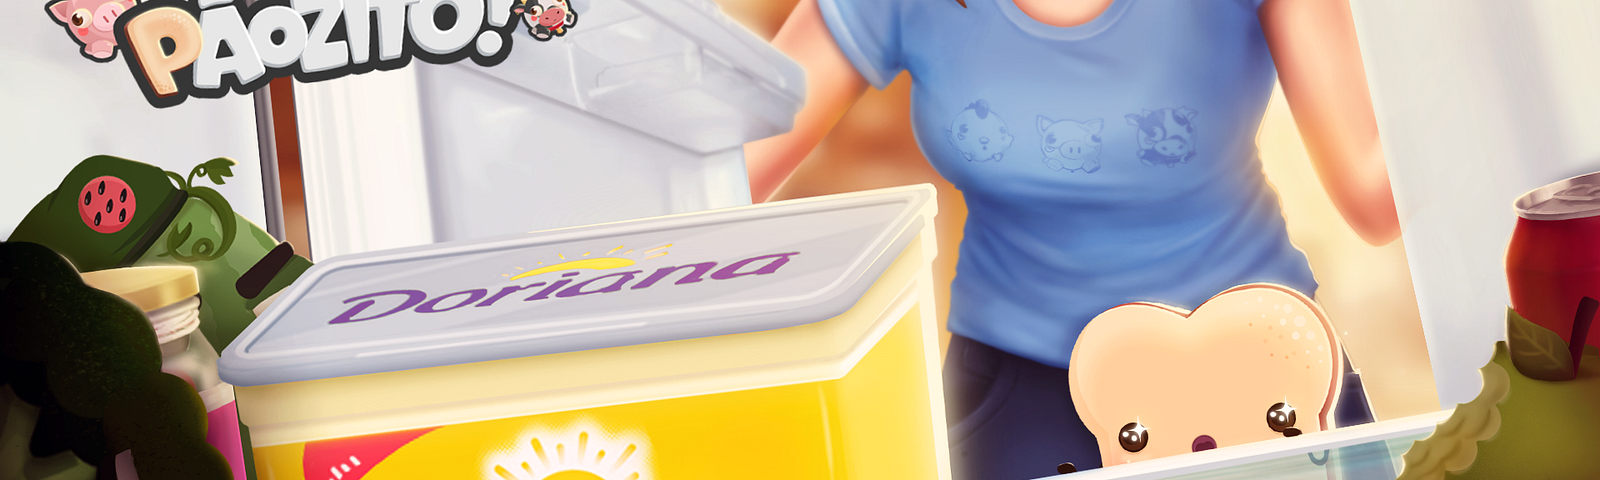 Imagem promocional do Pãozito com a Doriana. Mostra a visão de dentro de uma geladeira, evidenciando um pote de Doriana sendo observado pelo Pãozito ao fundo e uma mulher abrindo a geladeira.